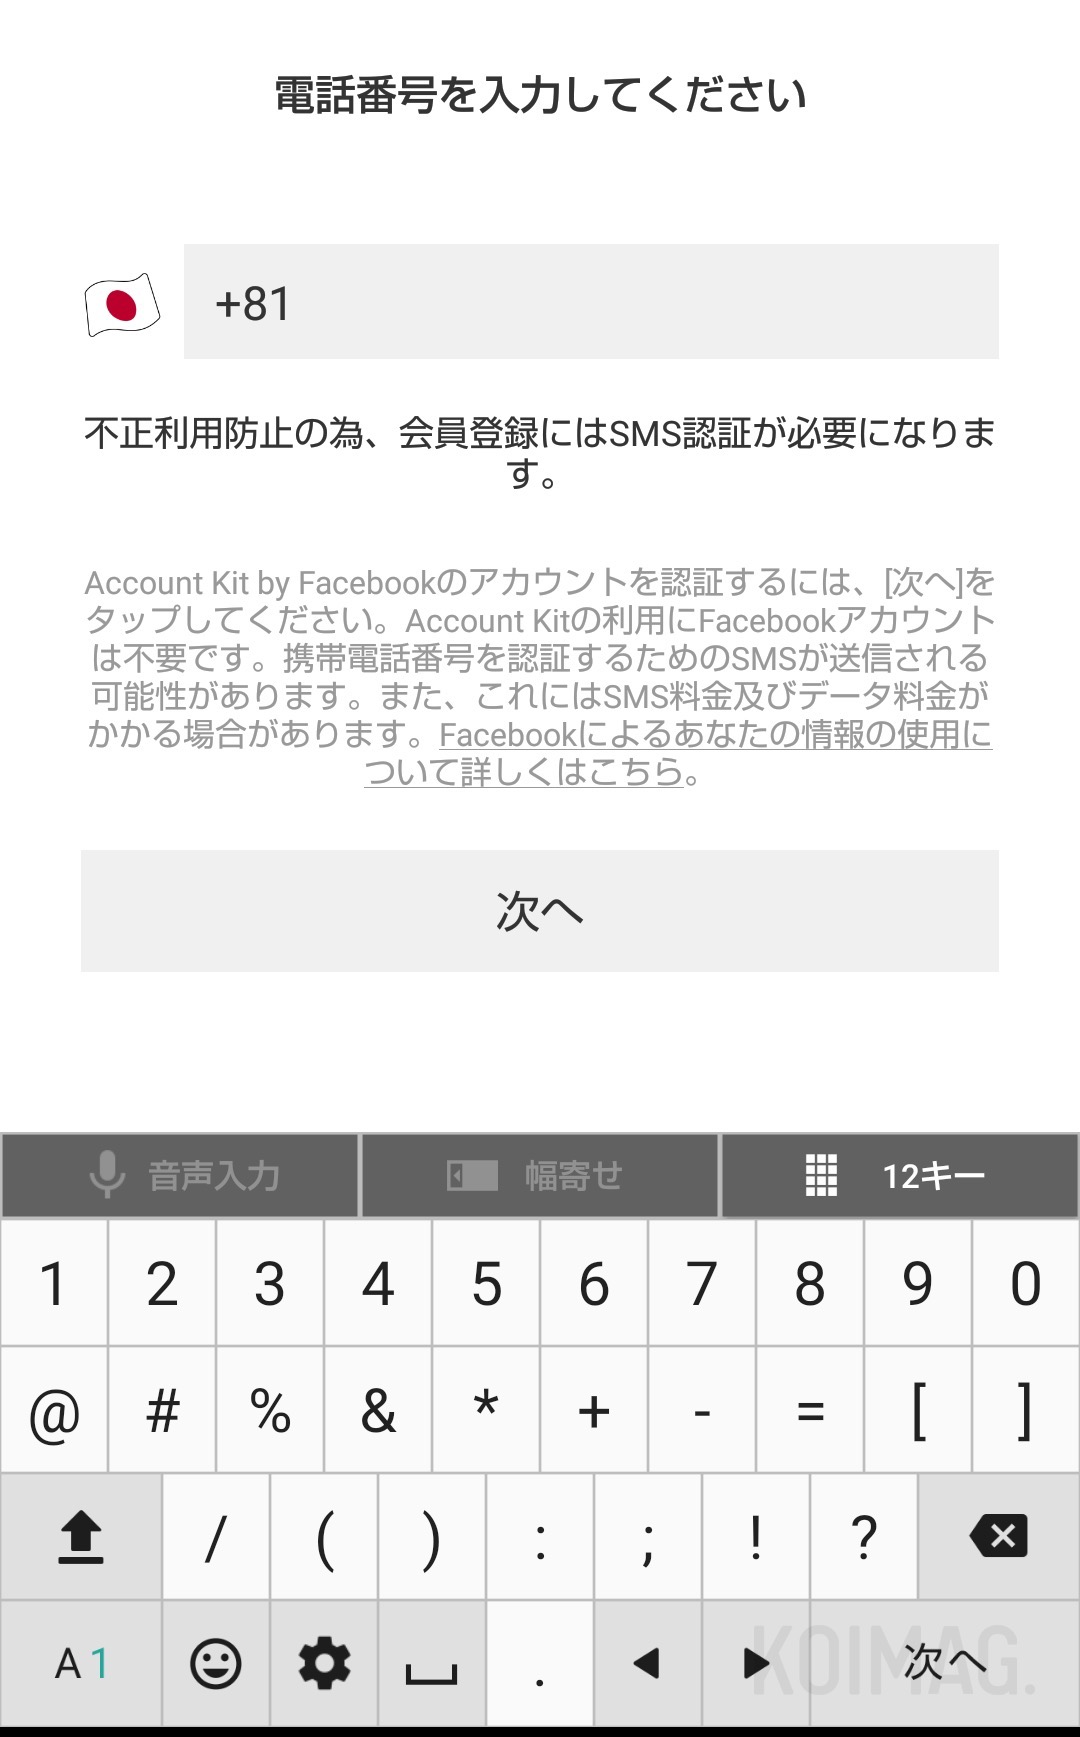 デーティングアプリ『QooN』の電話番号認証画面。SMSに6桁の数字が送られてきますので、その番号を入力すると認証完了します。